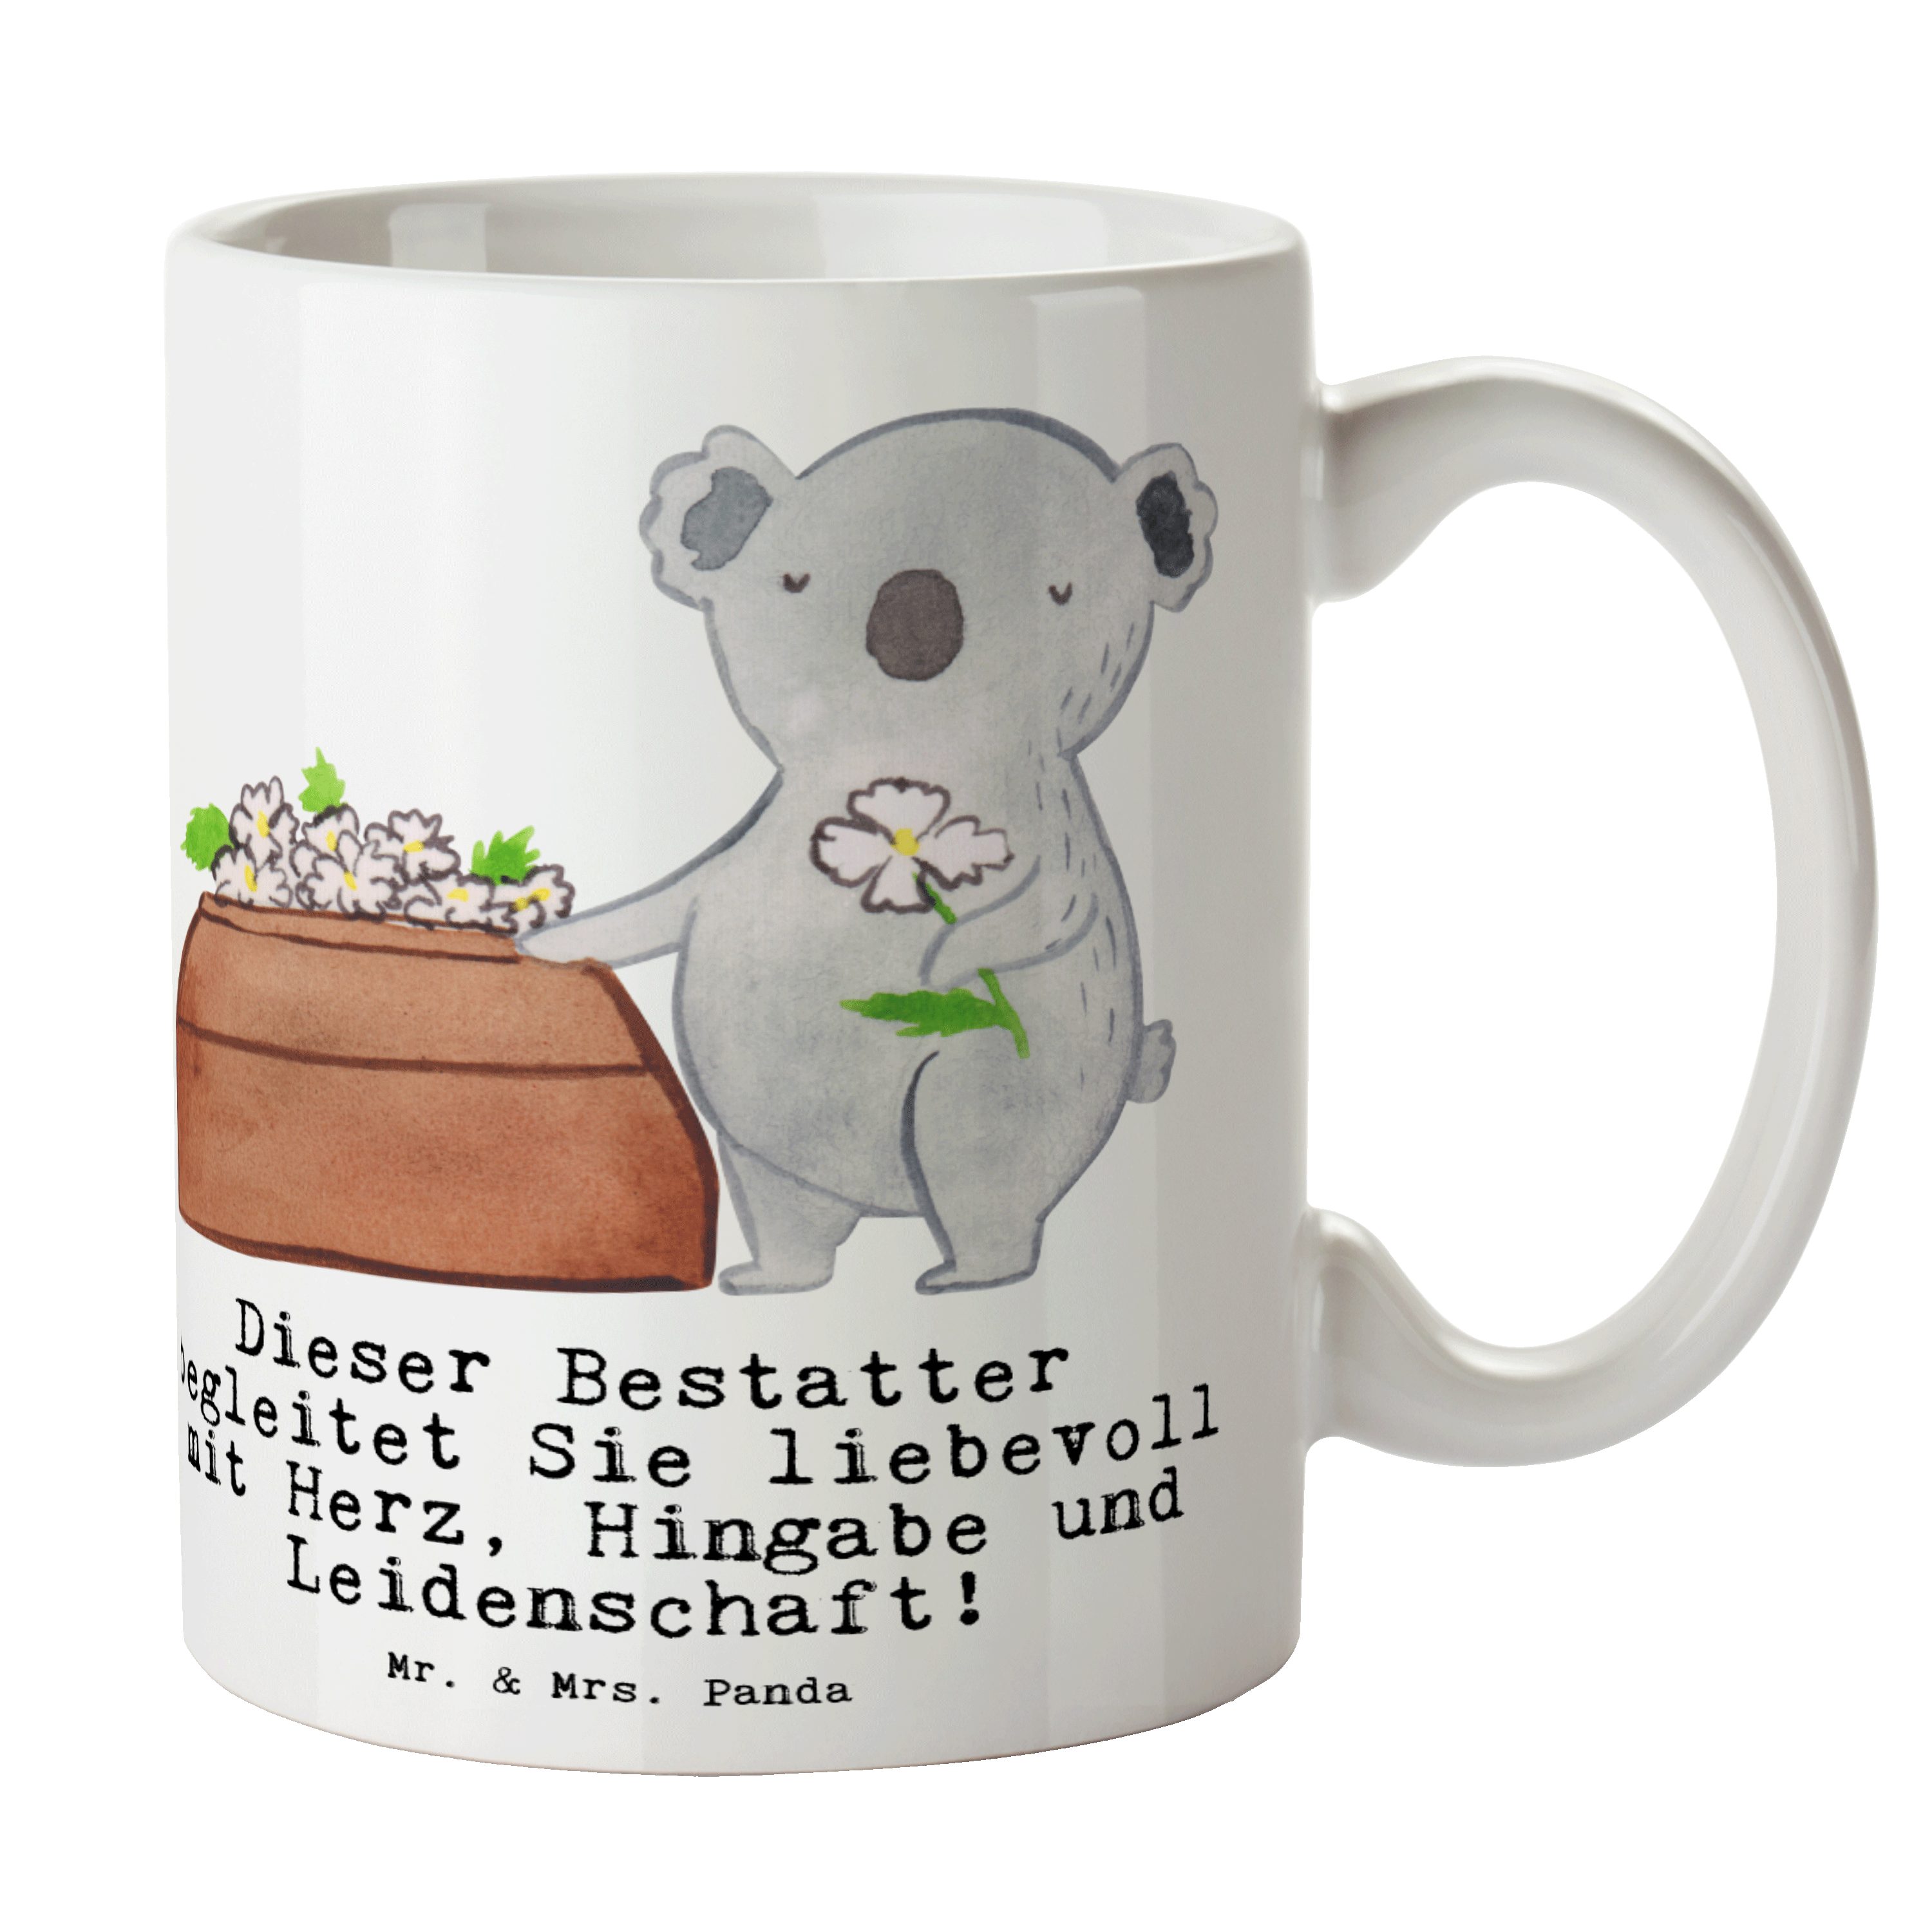 Mr. & Mrs. Panda Tasse Bestatter mit Herz - Weiß - Geschenk, Geschenk Tasse, Teebecher, Kaff, Keramik